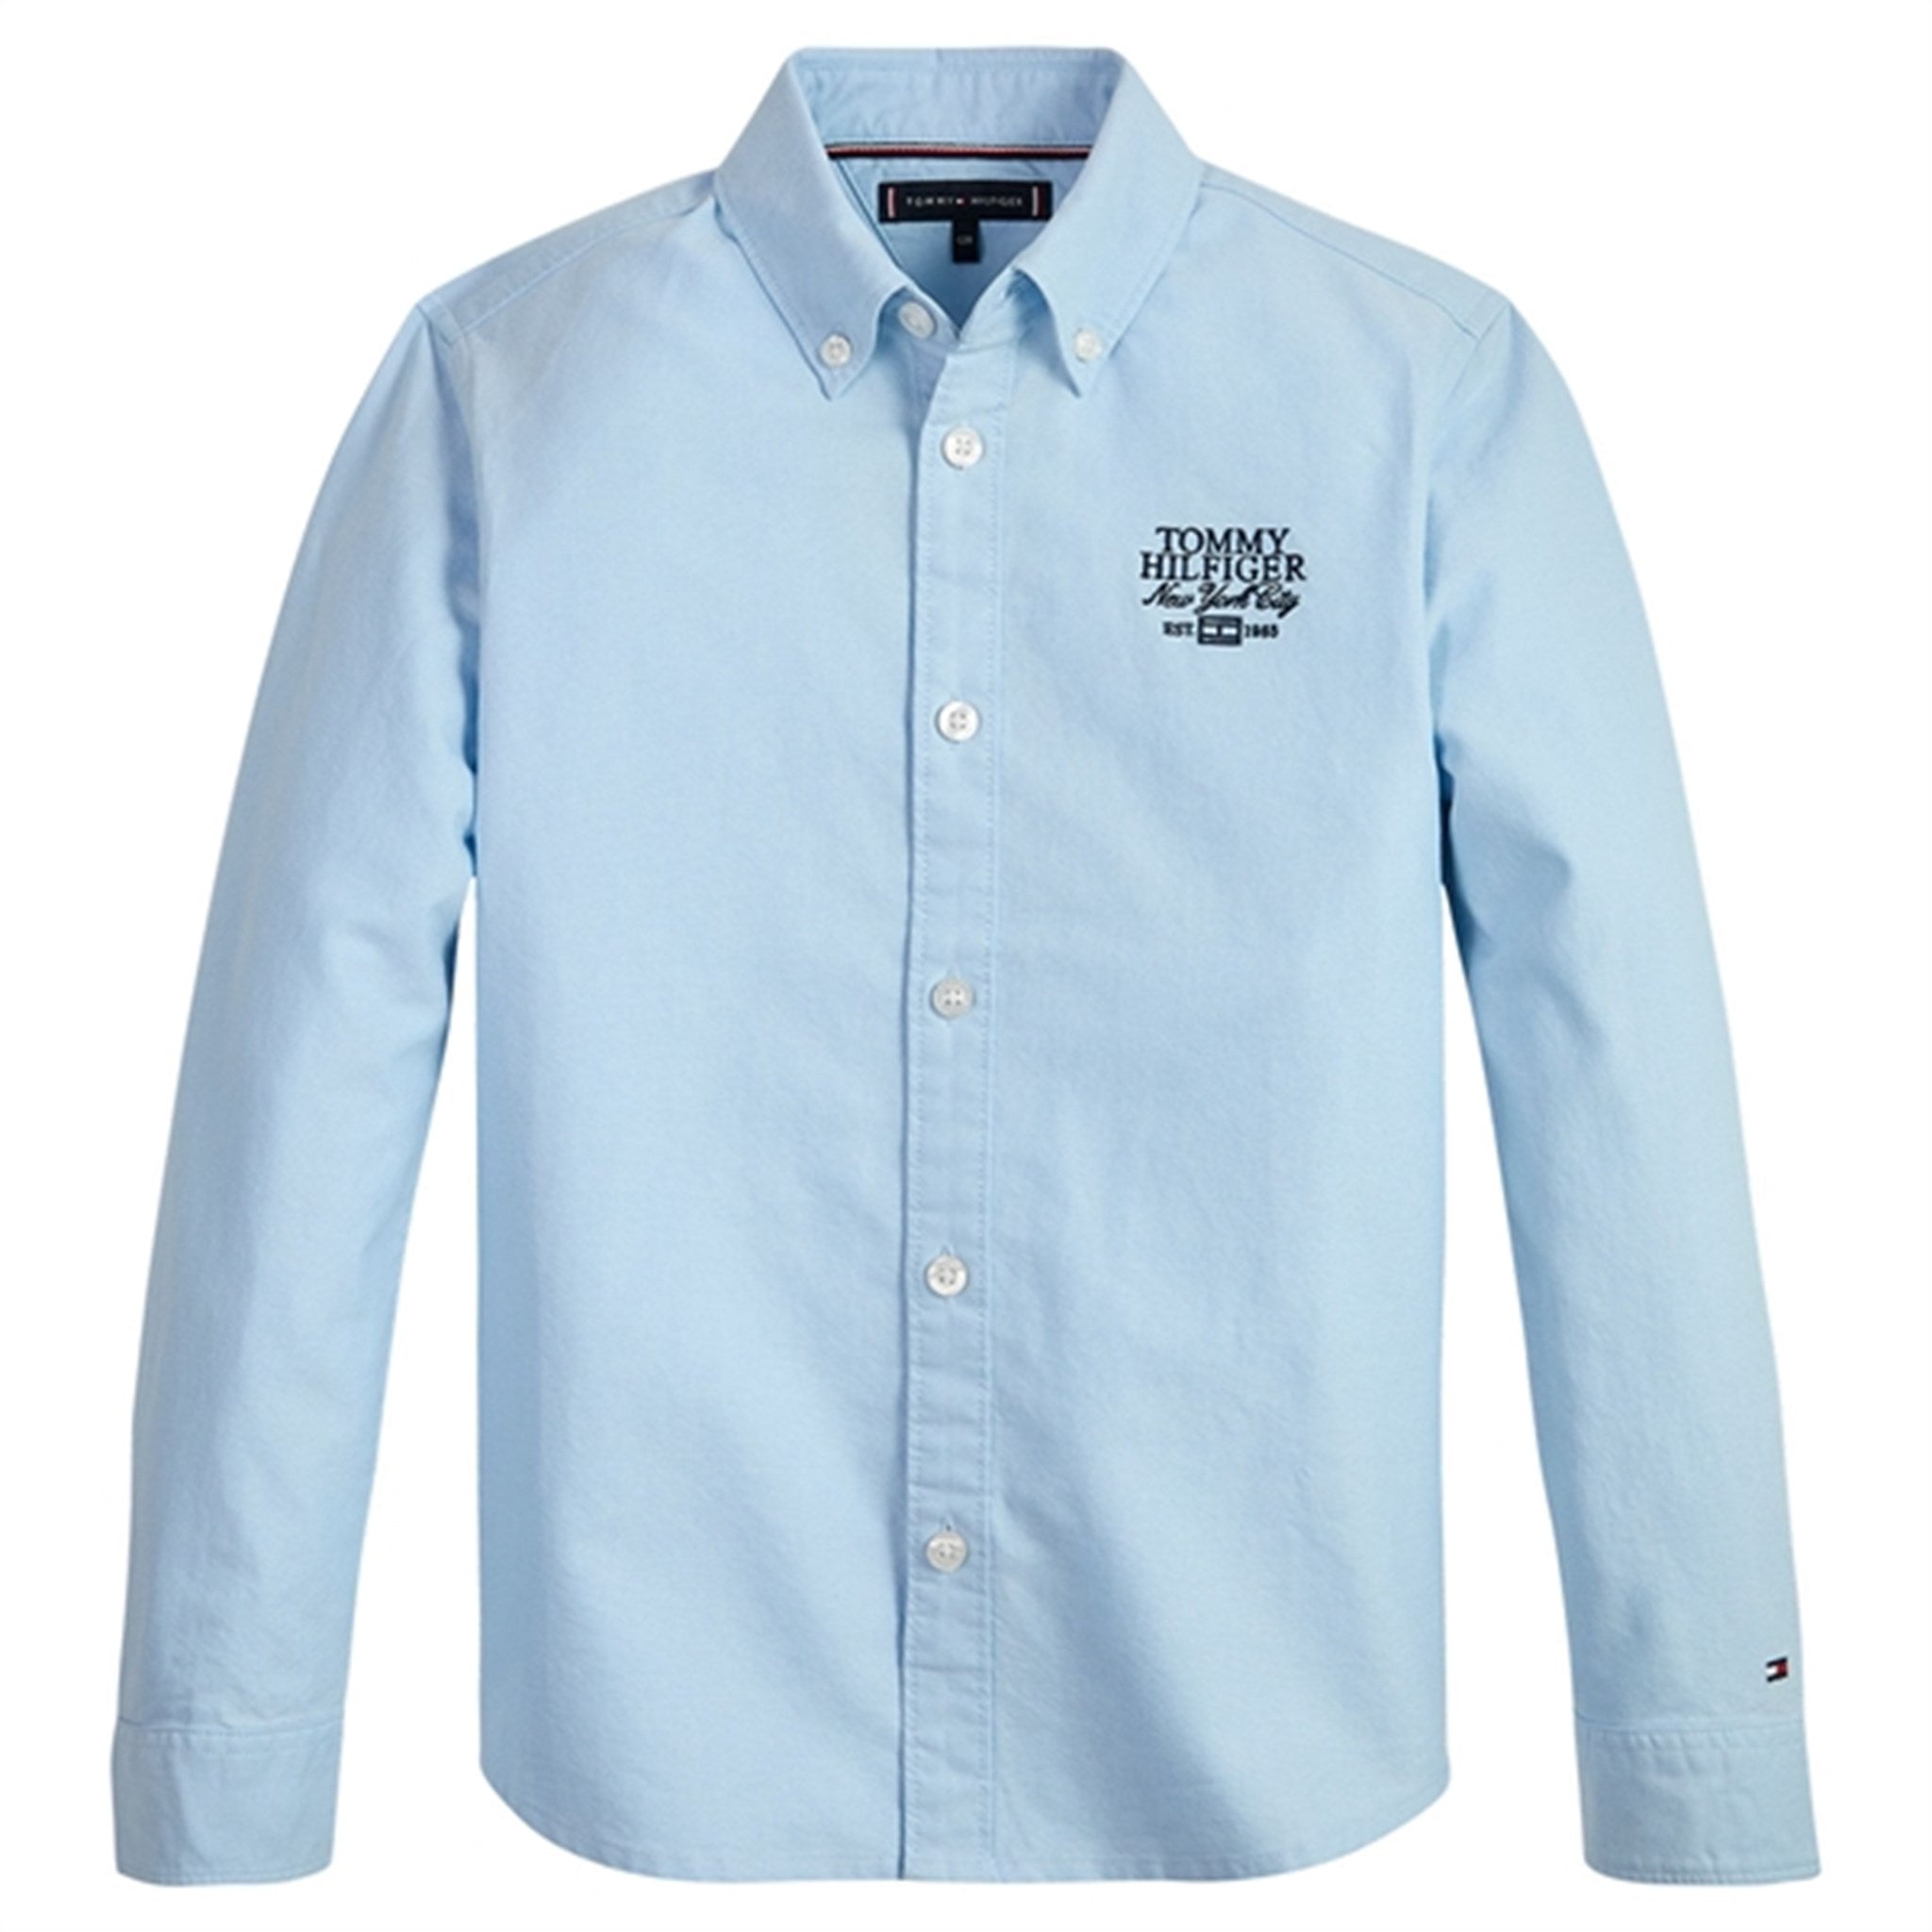 Tommy Hilfiger Branded Oxford Shirt Shoreside Blue